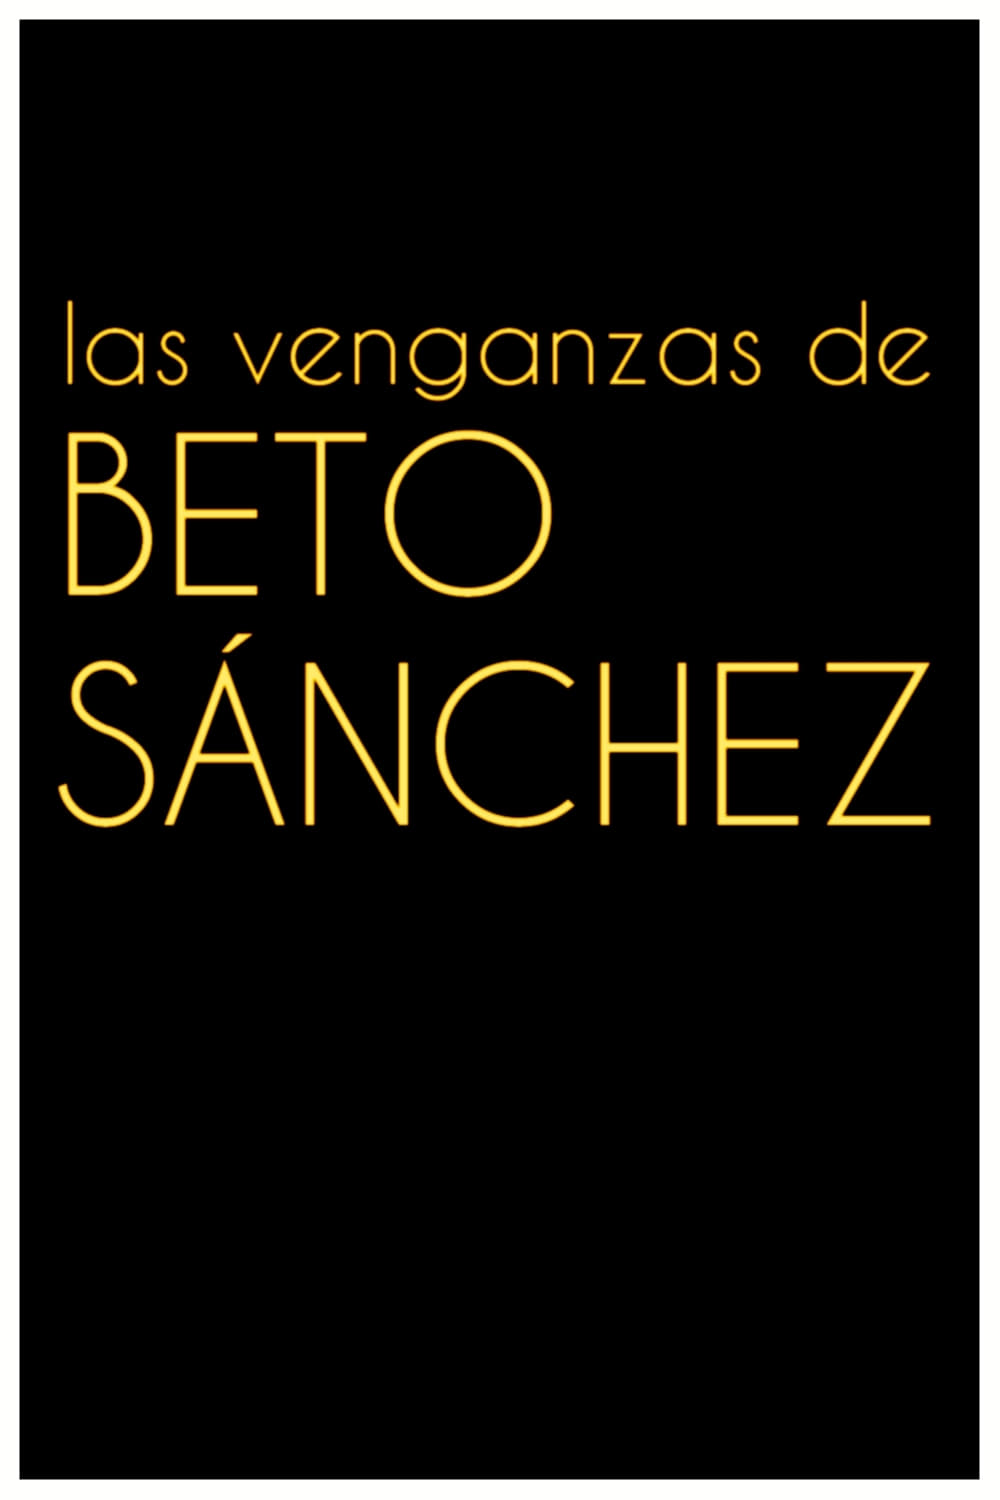 Las venganzas de Beto Sánchez (1973)